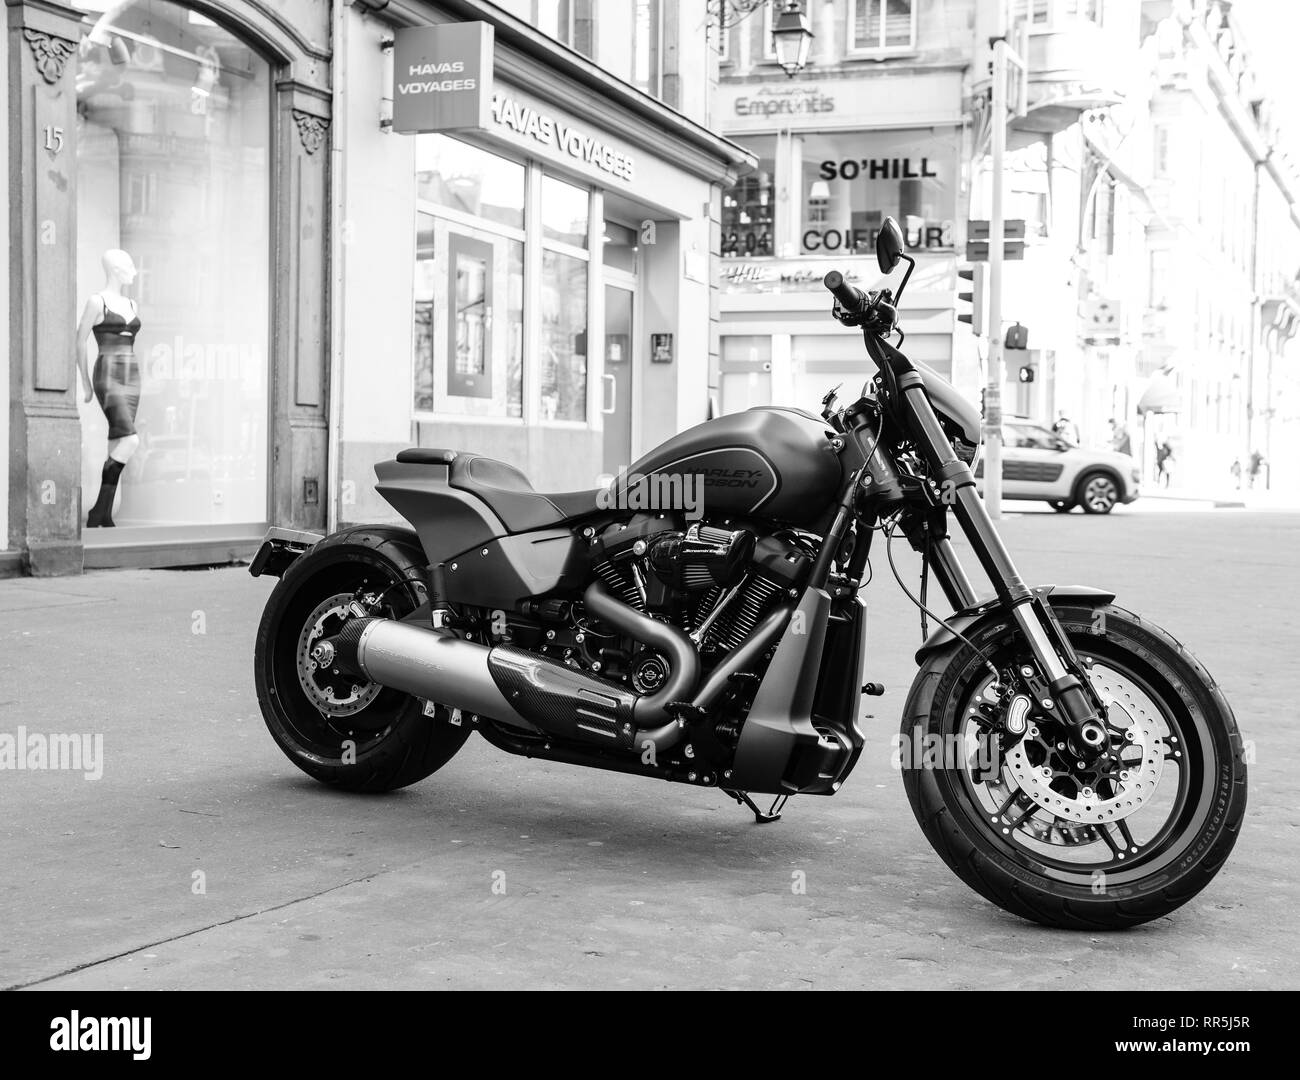 Strasbourg, France - Dec 16, 2018 : stationné dans la ville toute nouvelle moto Harley Davidson moto avec magasins et bâtiments en arrière-plan noir et blanc Banque D'Images